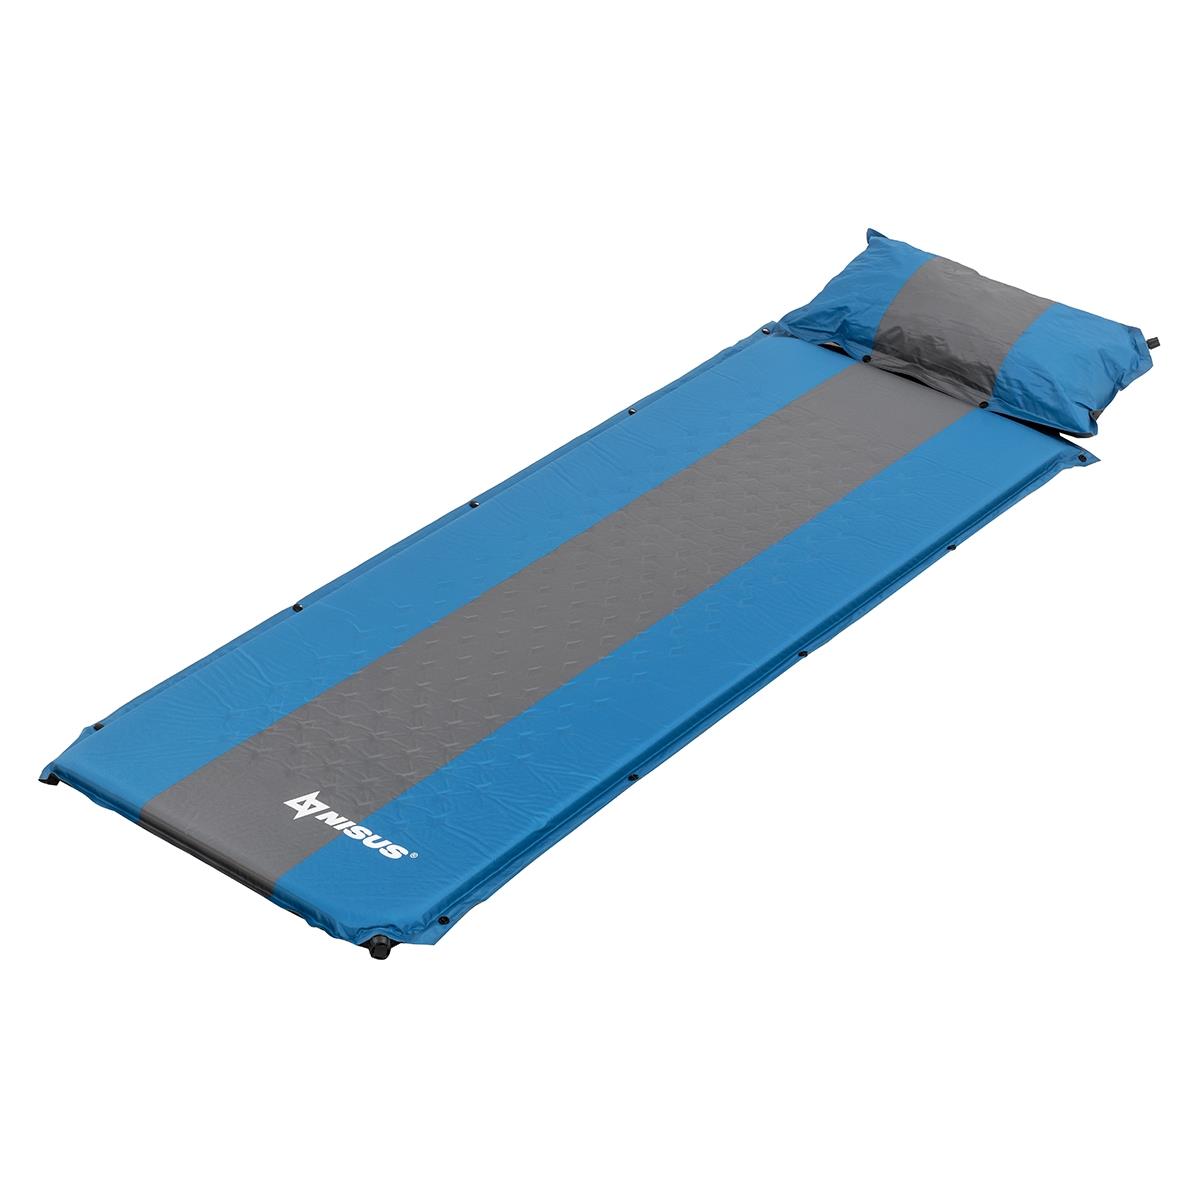 Коврик самонадув. с подушкой 30-170x65x4 голубой/серый (N-004P-BG) Nisus антипригарный коврик для выпекания замораживания и раскатки теста paterra